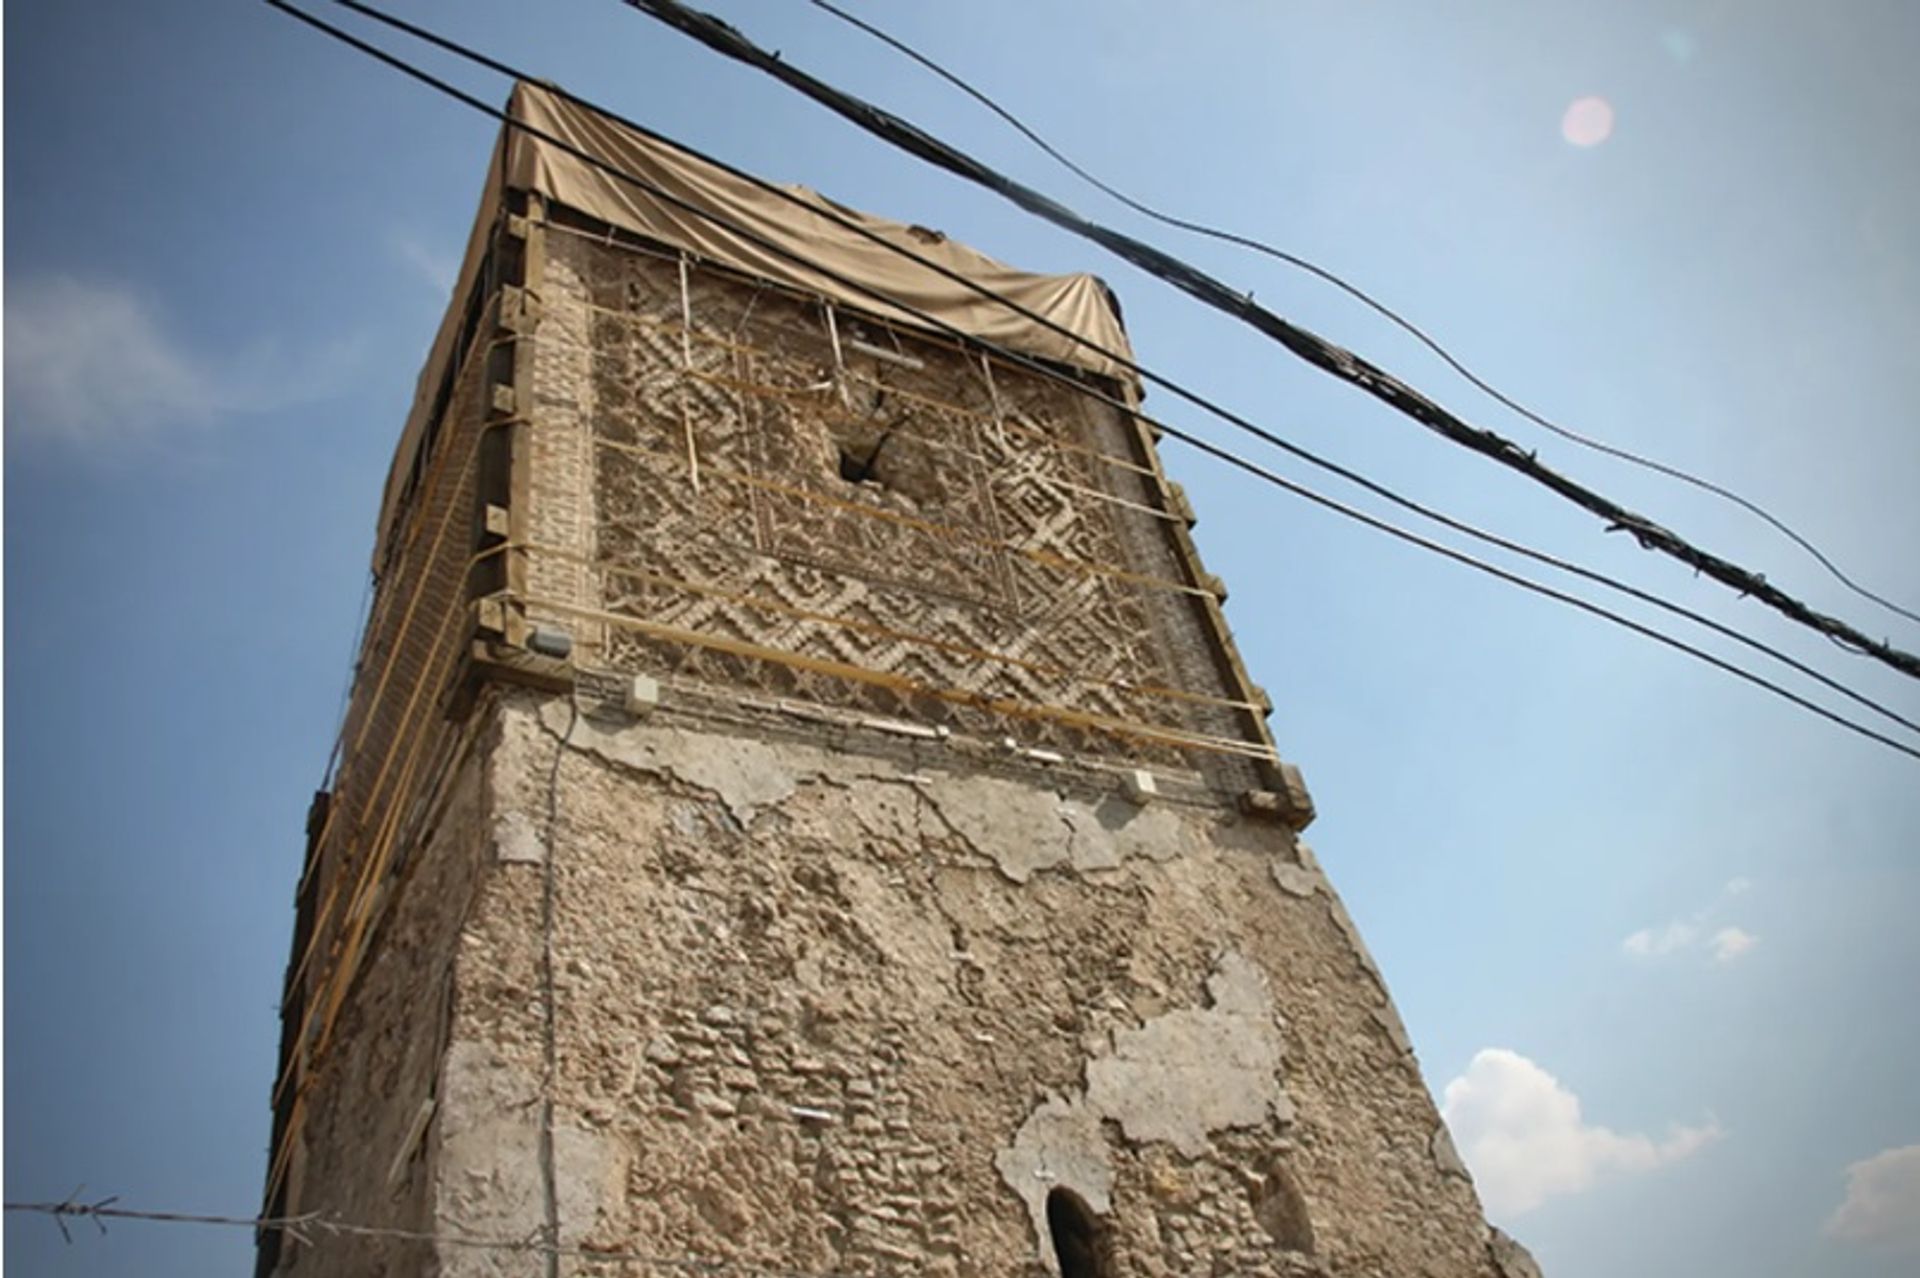 נהרס על ידי דאע"ש, צריח ה"גיבן" של מסגד אל-נורי במוסול ייבנה מחדש עם לבנים בתבנית המקורית של המאה ה-12

הדני דיטמרס